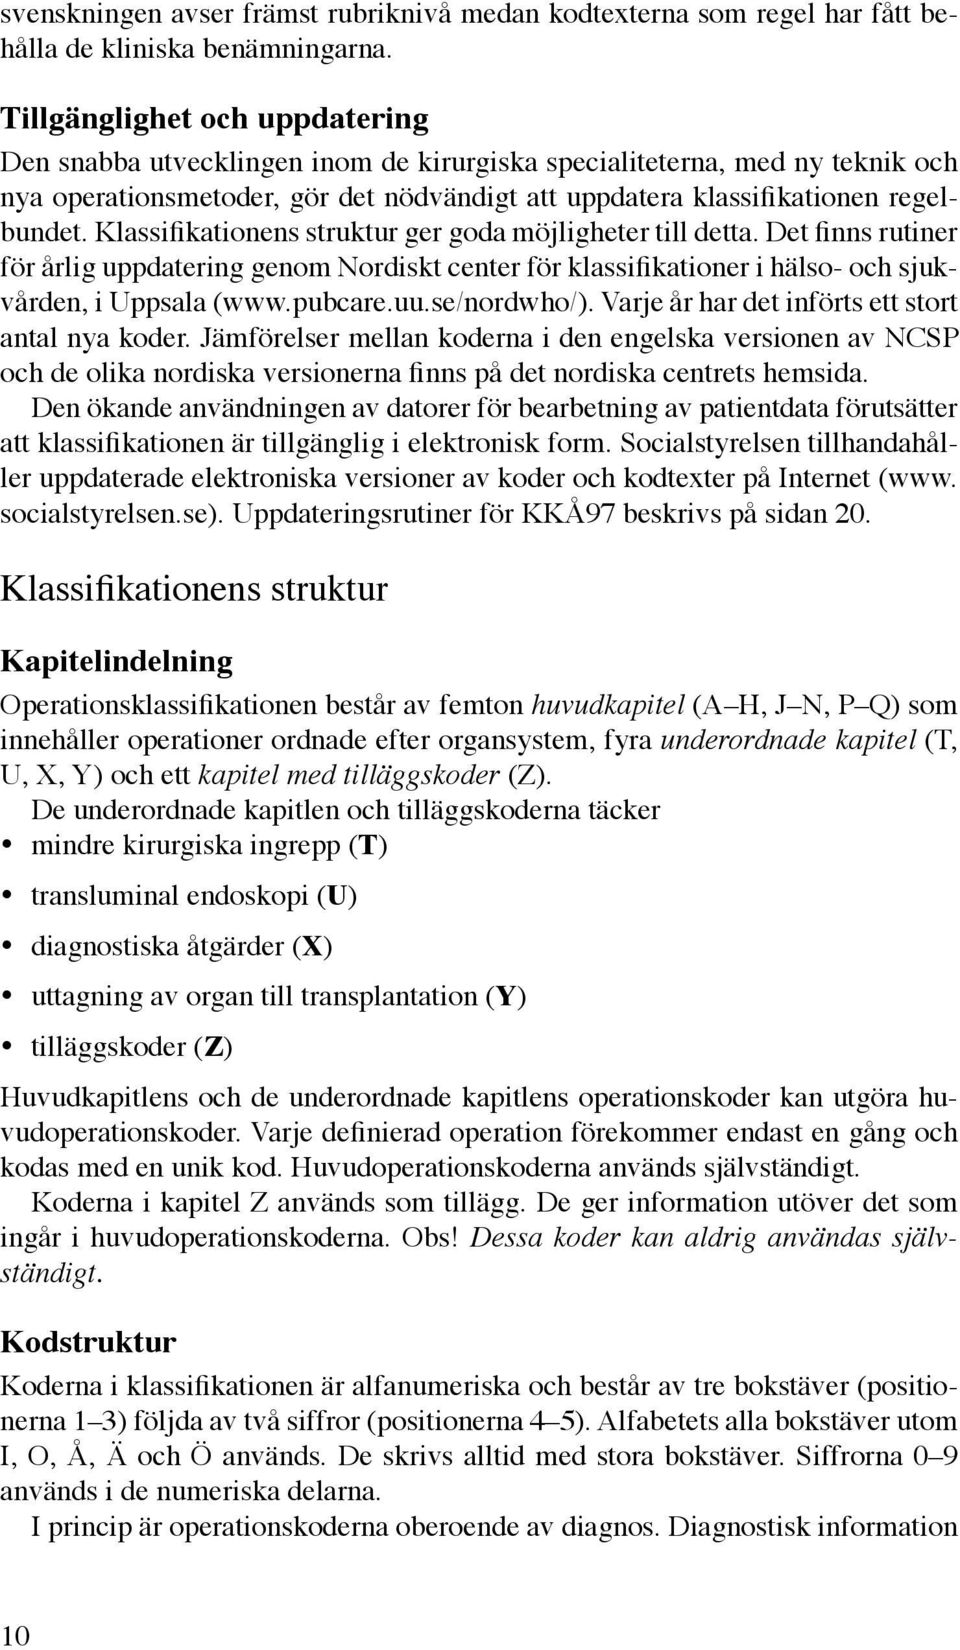 Klassifikationens struktur ger goda möjligheter till detta. Det finns rutiner för årlig uppdatering genom Nordiskt center för klassifikationer i hälso- och sjukvården, i Uppsala (www.pubcare.uu.